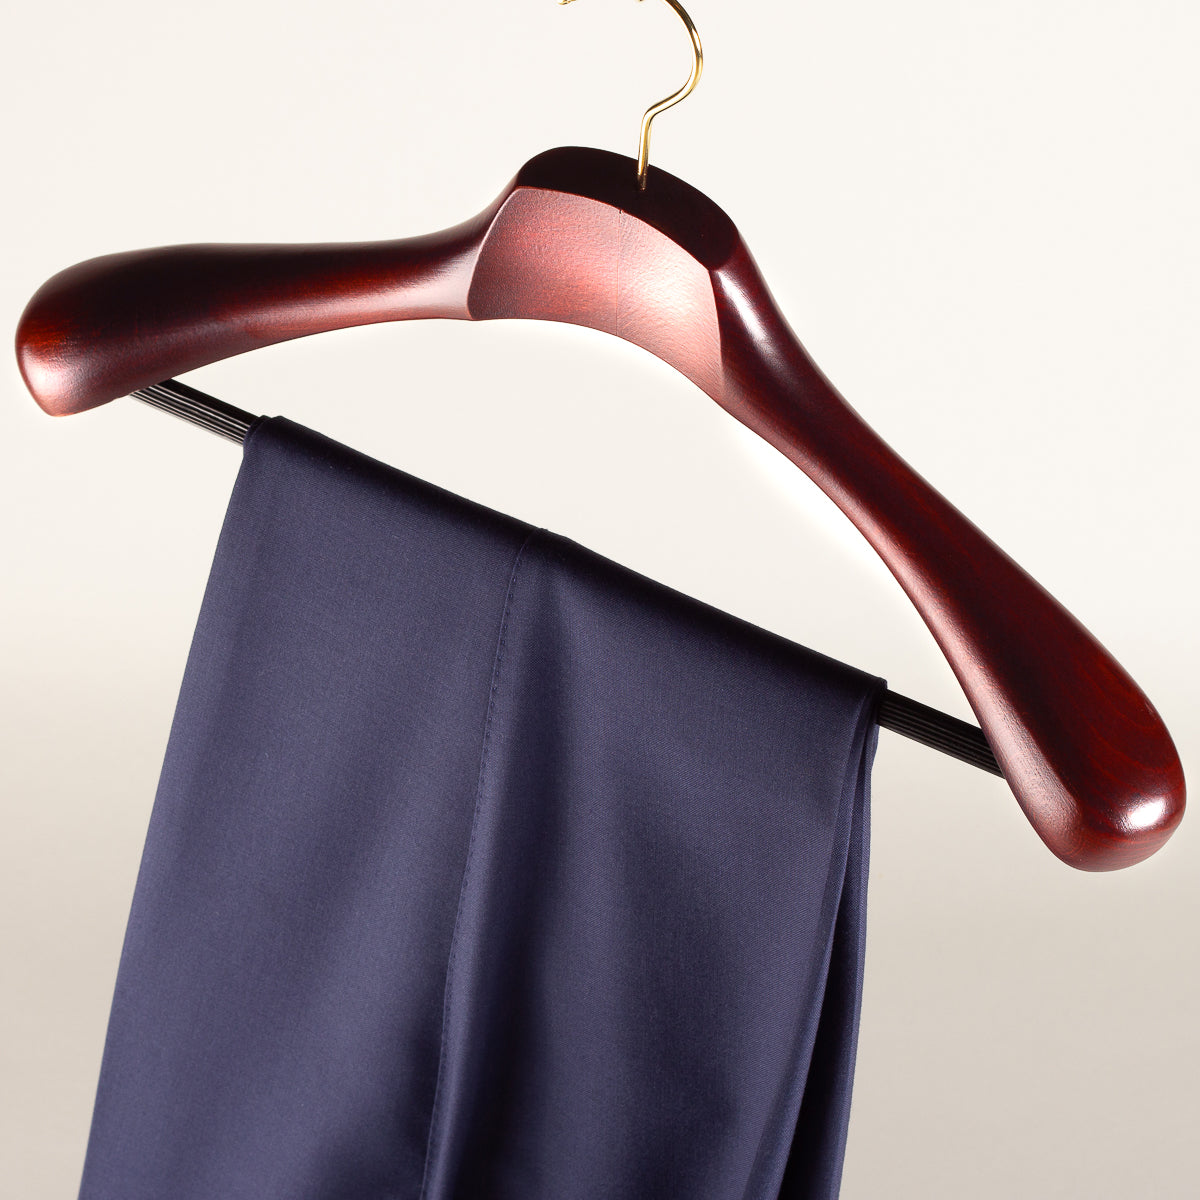 Houten kledinghanger voor pak deluxe - mahonie met broeklat